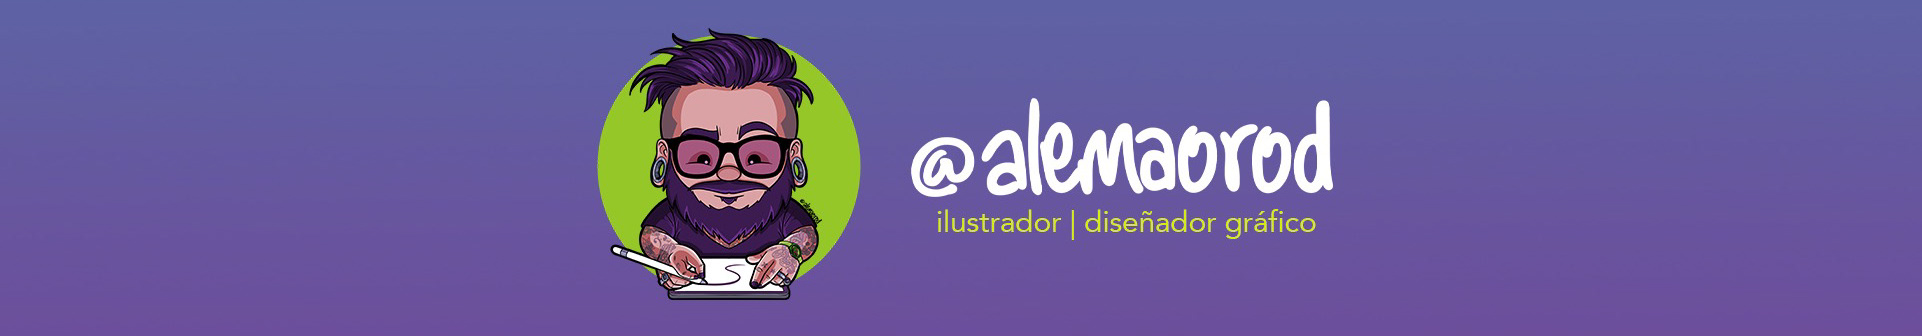 Profil-Banner von Alemao Rod